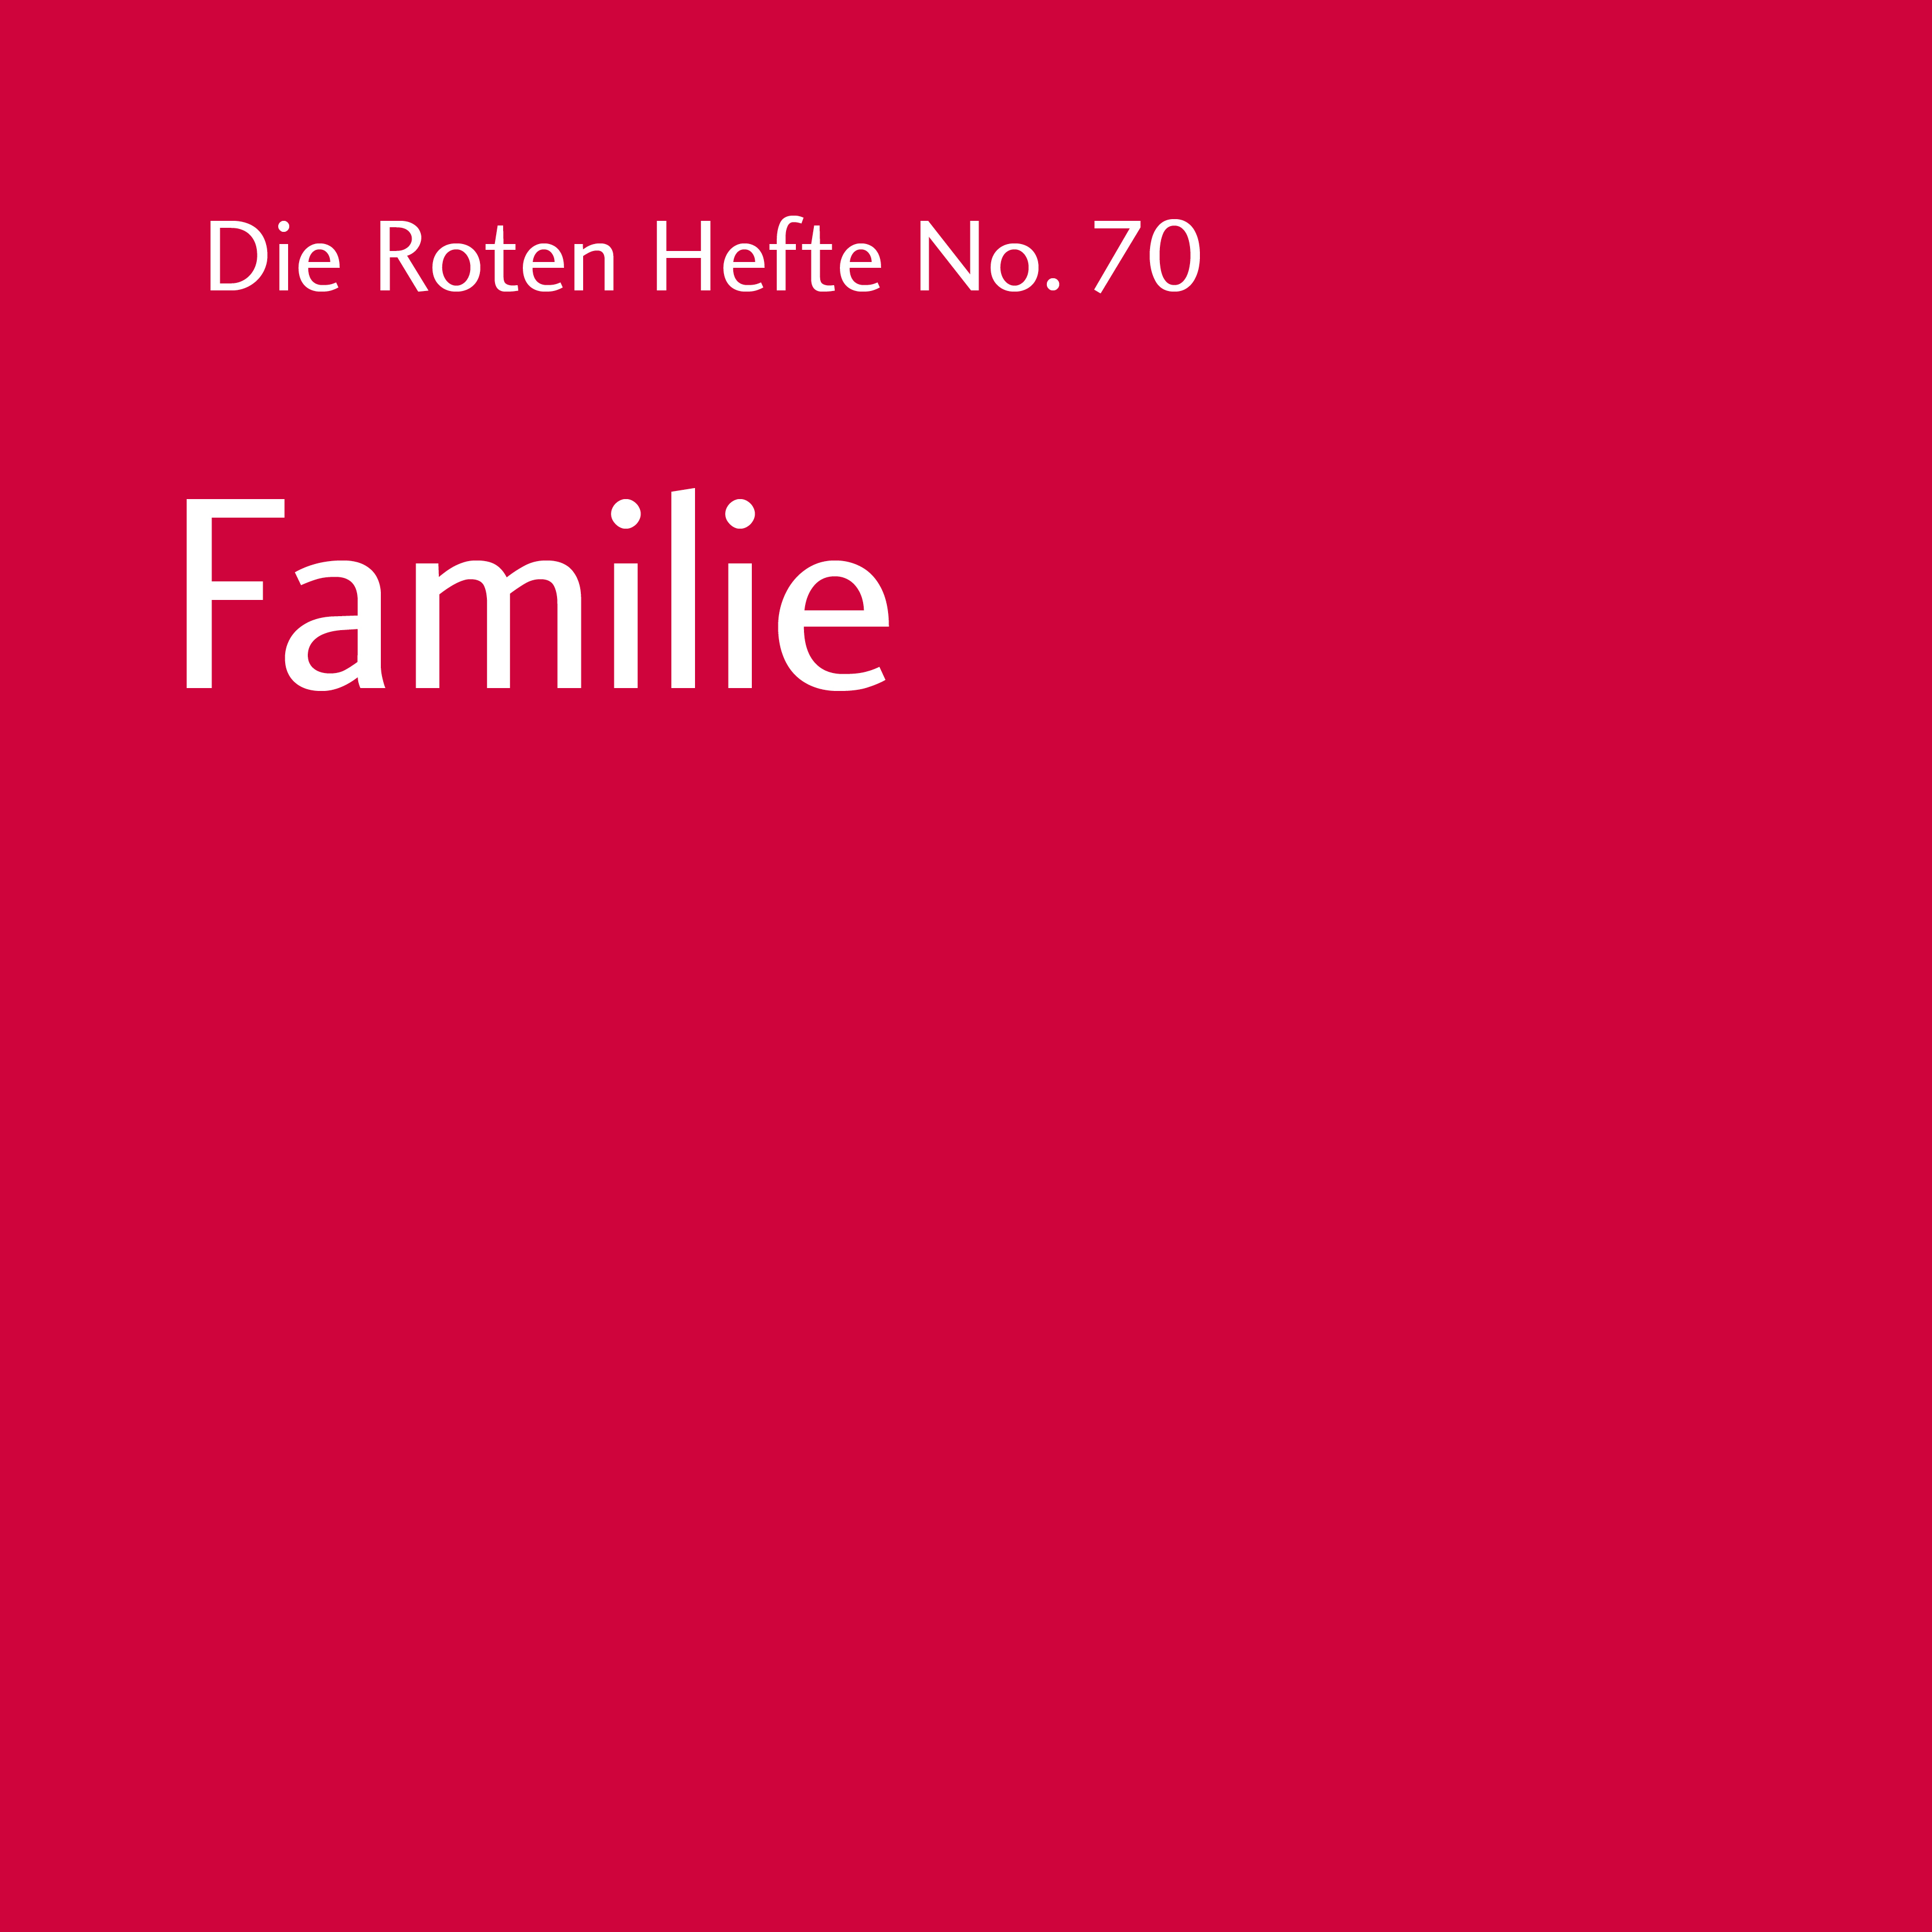 Rotes Heft No. 70 - Familie